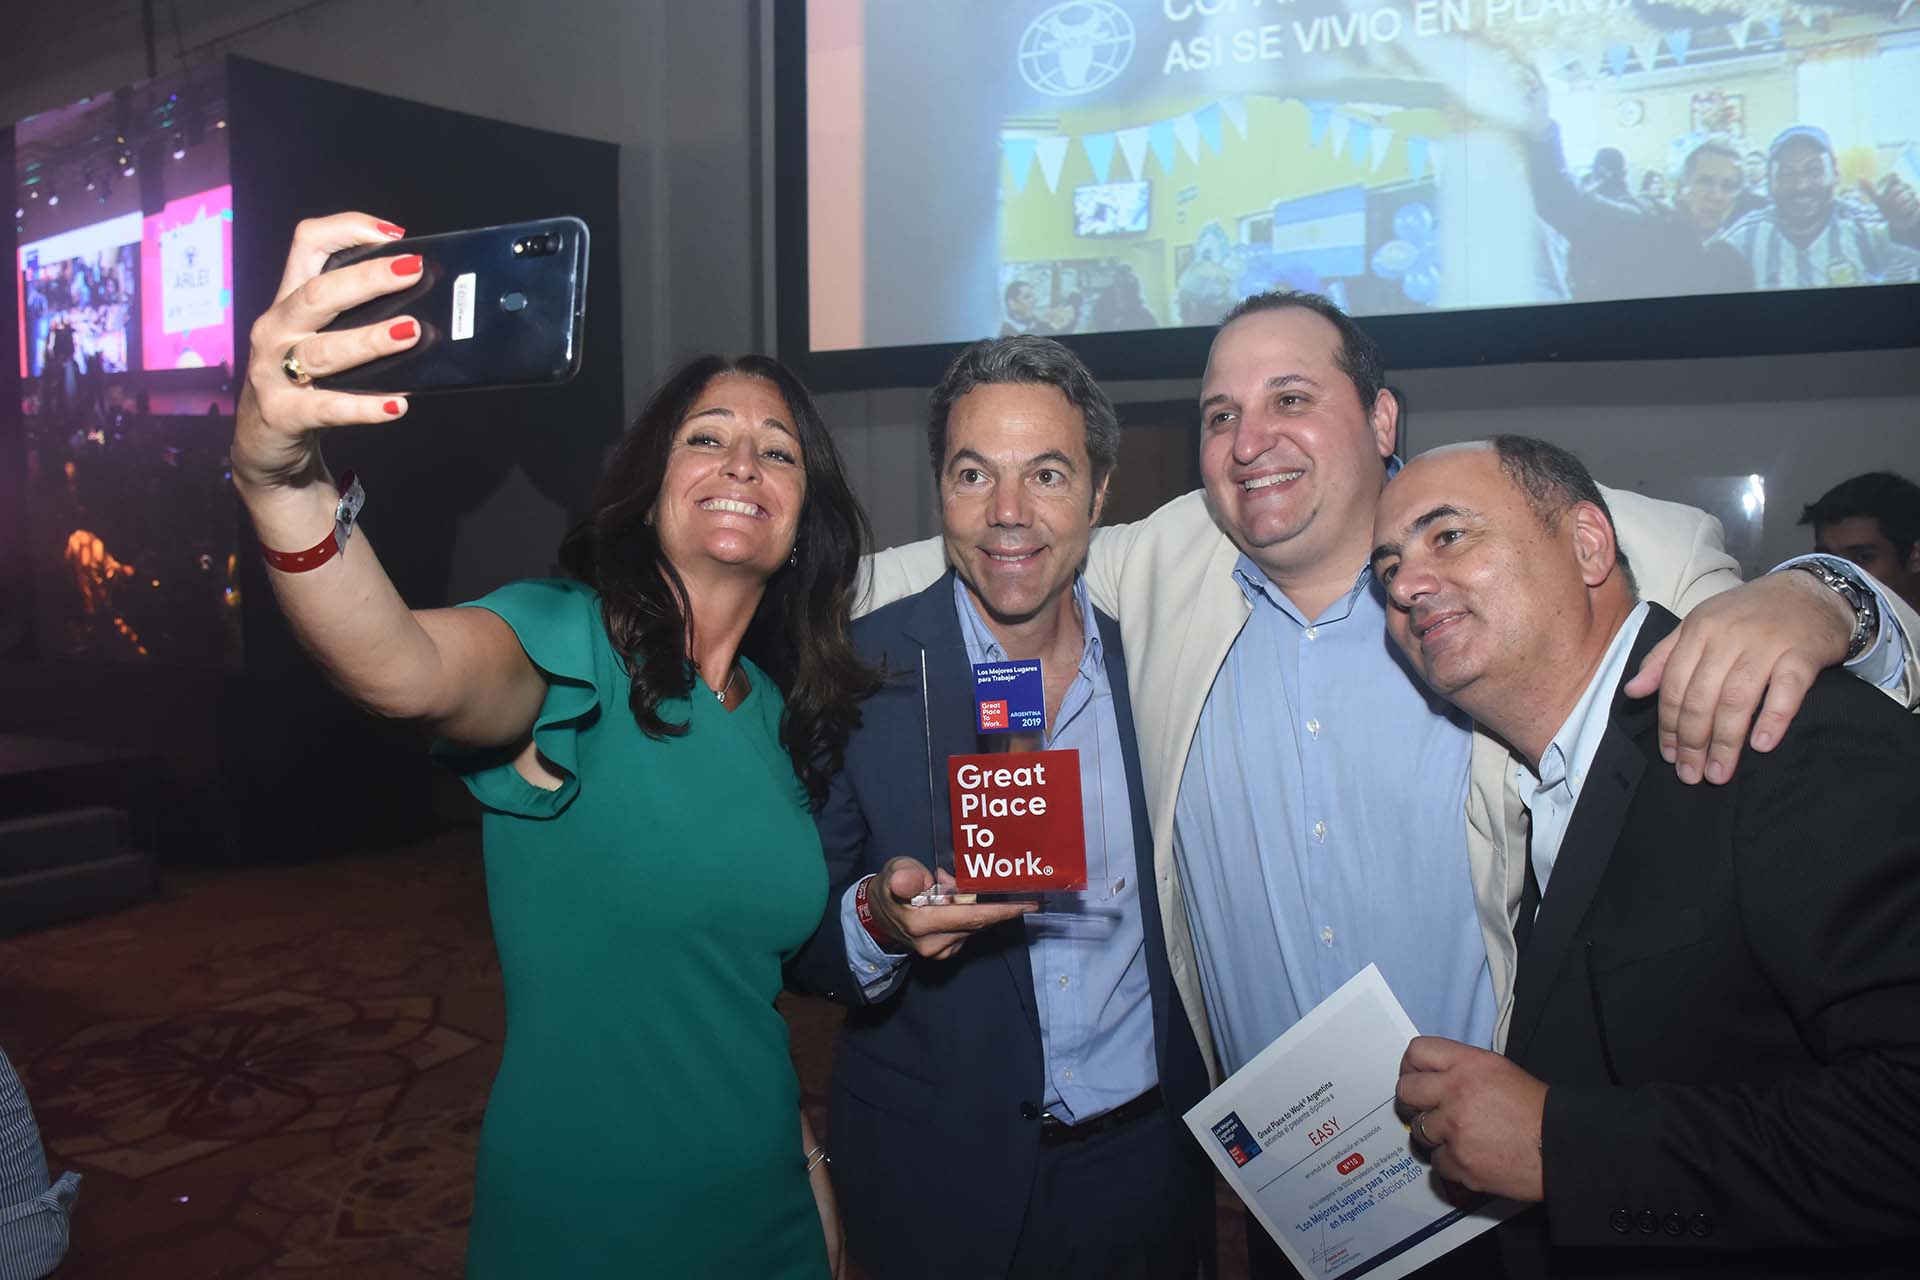 El equipo de Easy celebró con una selfie la premiación